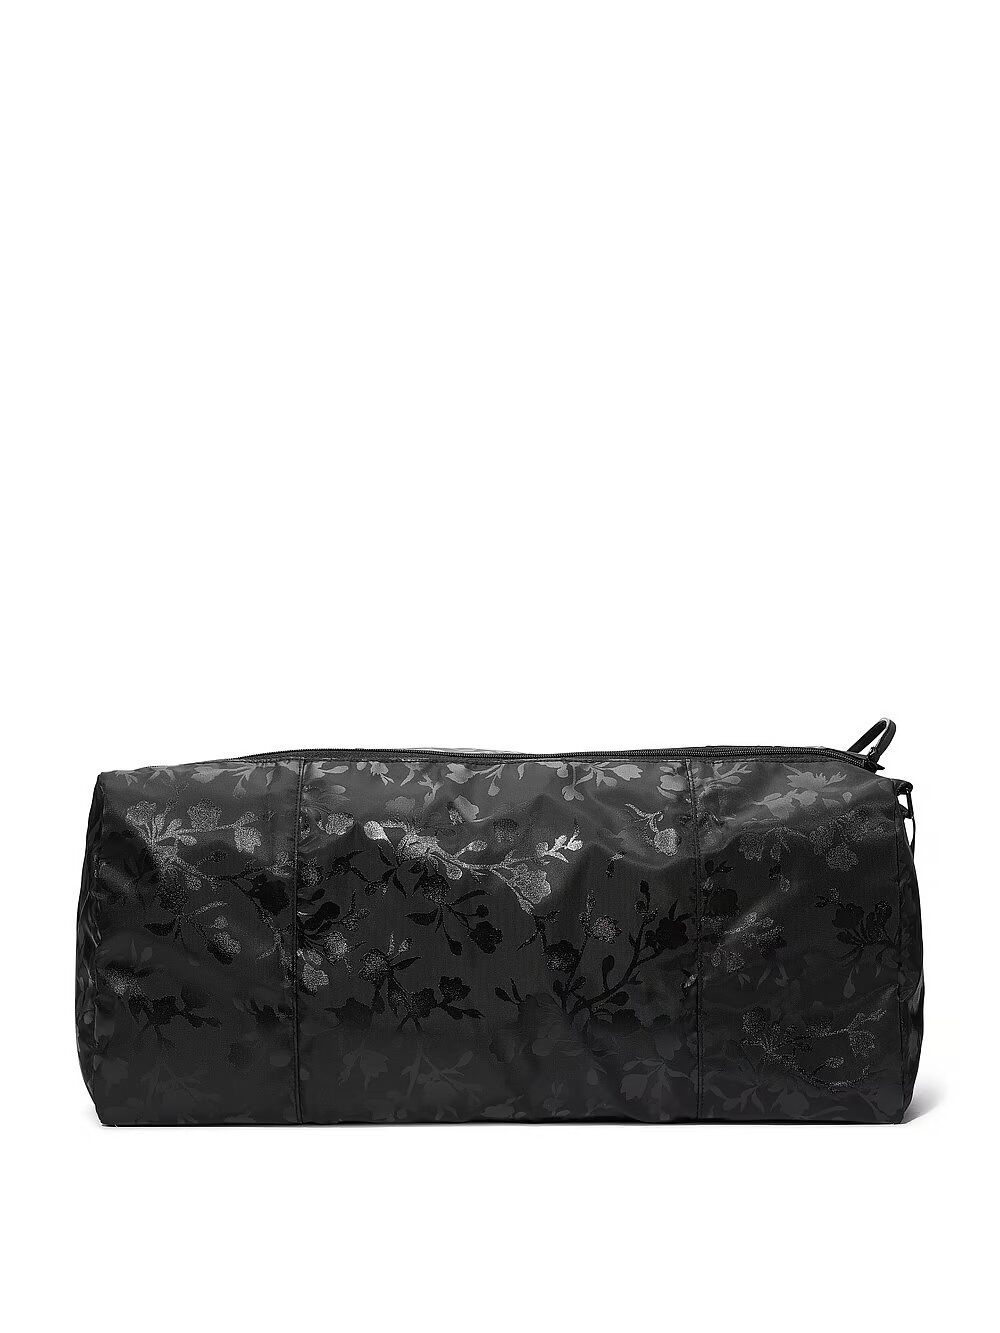 Спортивна сумка Victoria's Secret Duffle Bag 975270QBS фото